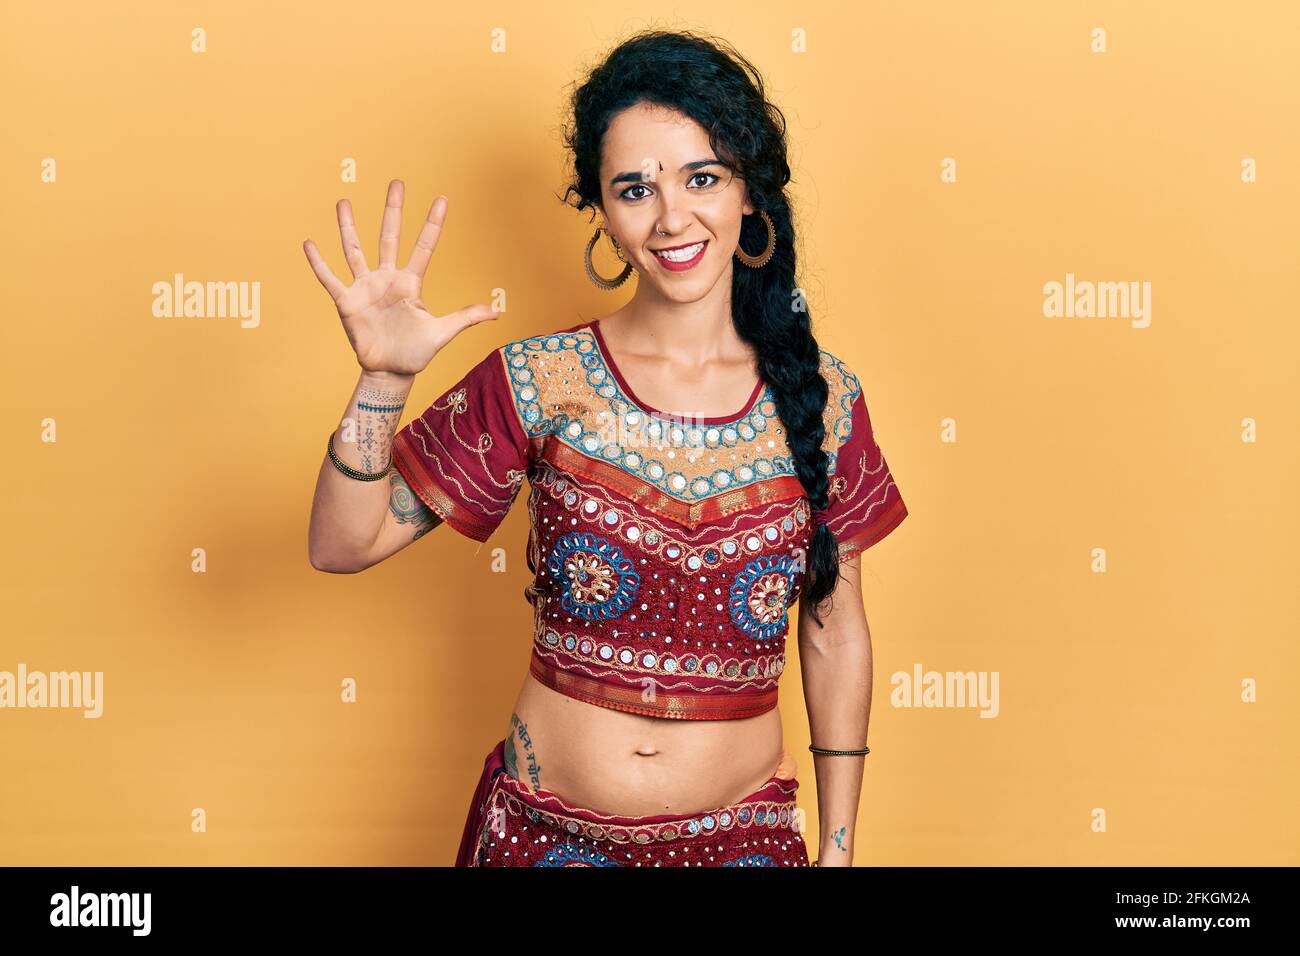 Junge Frau in Bindi- und bollywood-Kleidung zeigt und zeigt mit den Fingern Nummer fünf auf, während sie selbstbewusst und glücklich lächelt. Stockfoto